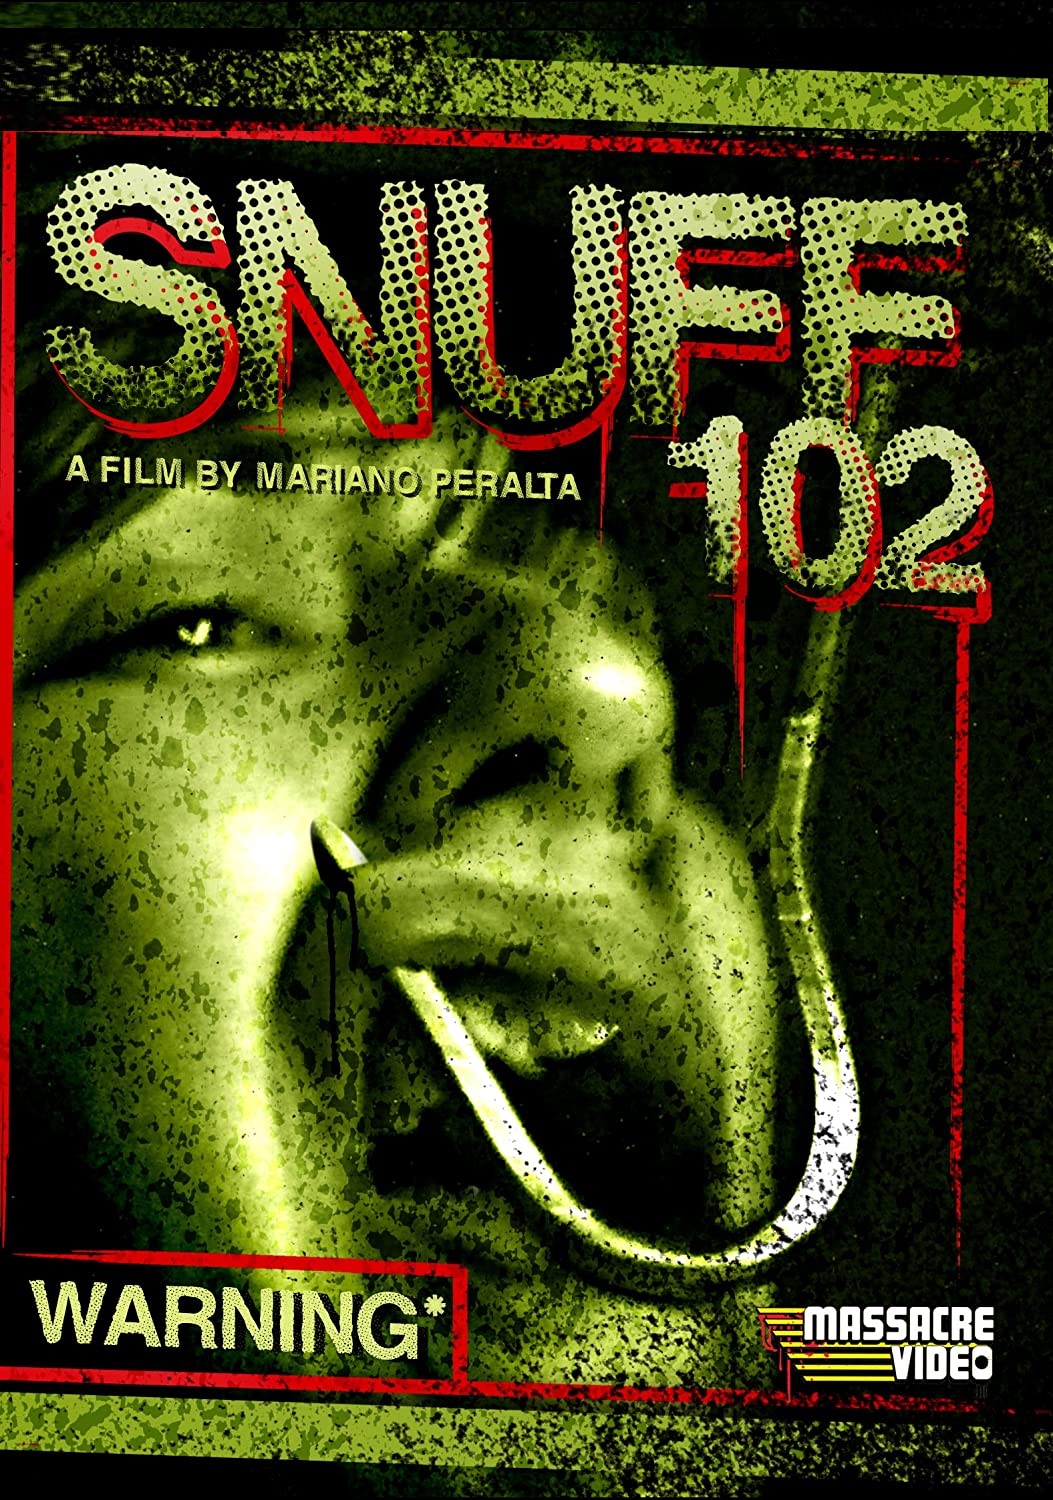 Snuff 102 [Sub-ITA] (2007)